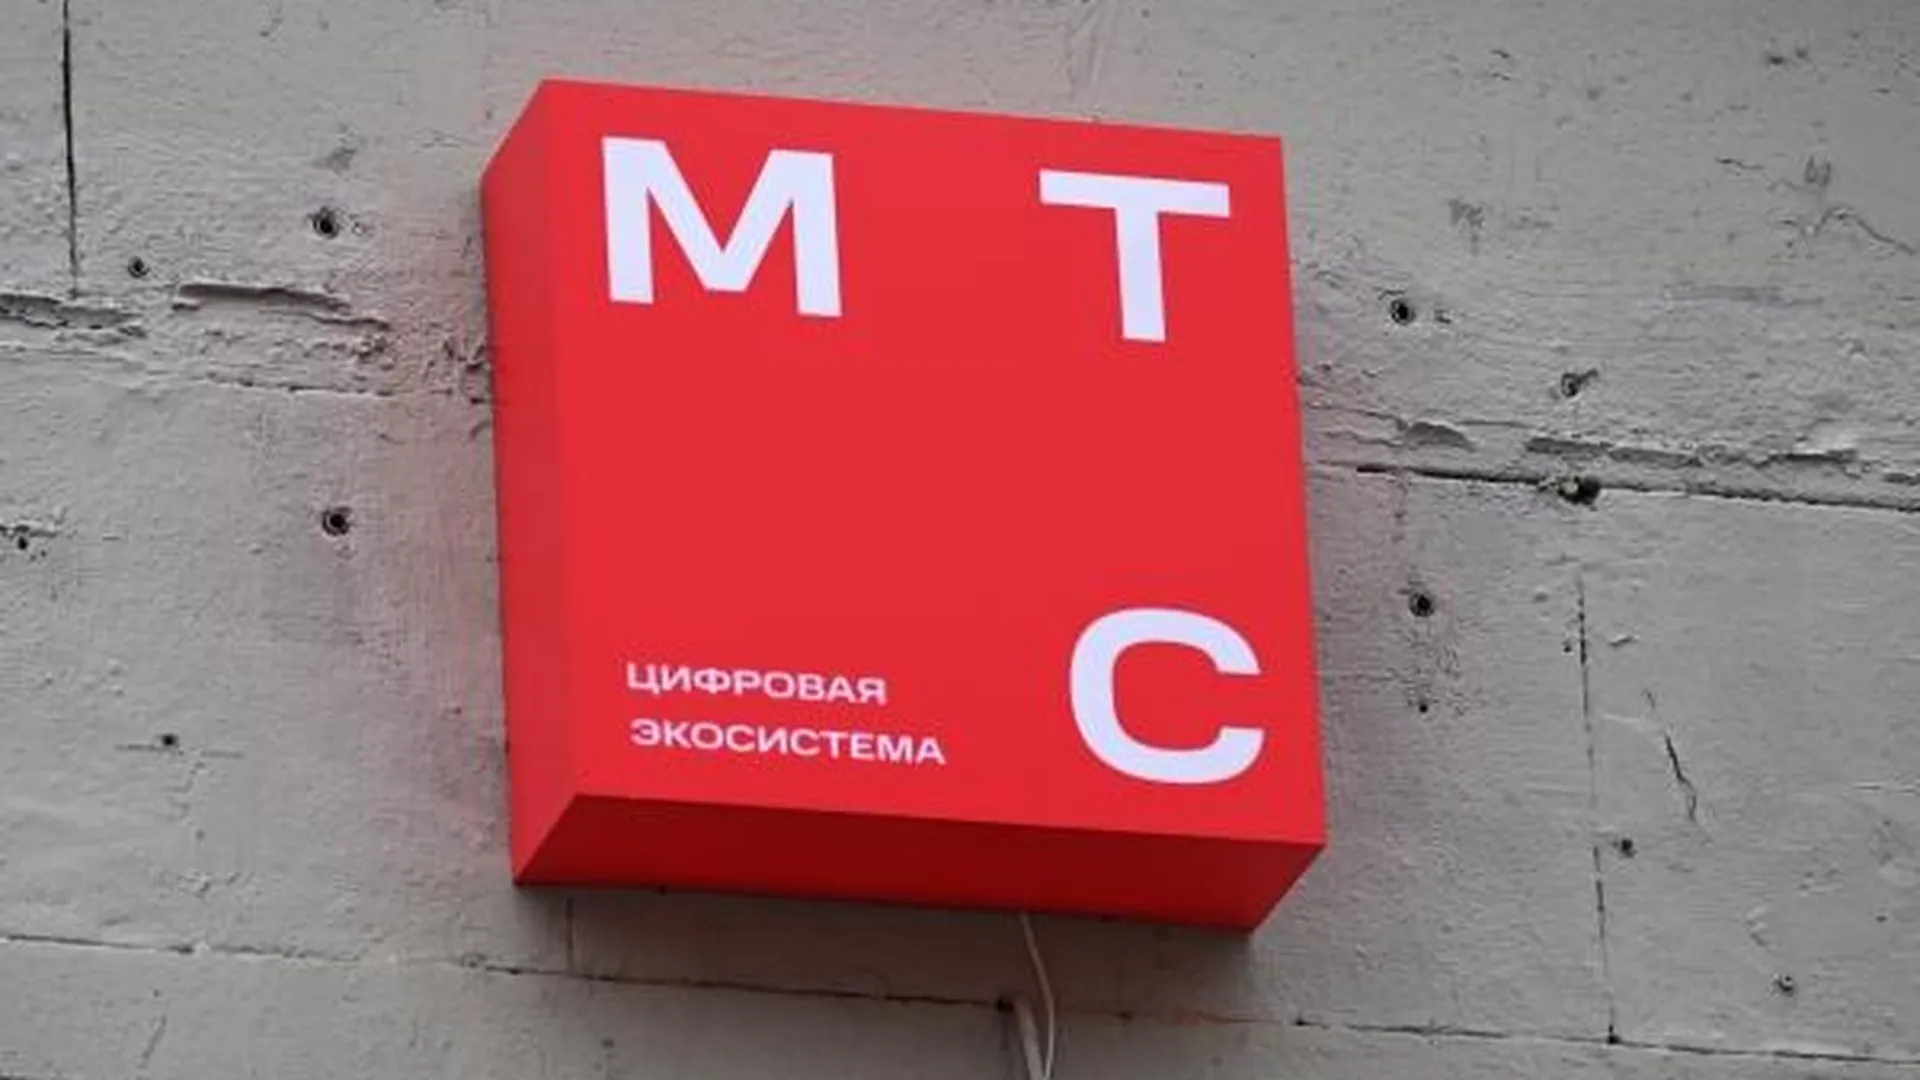 Оскорбляли и унижали. Личные данные клиентов МТС в Омске оказались в свободном доступе — СМИ